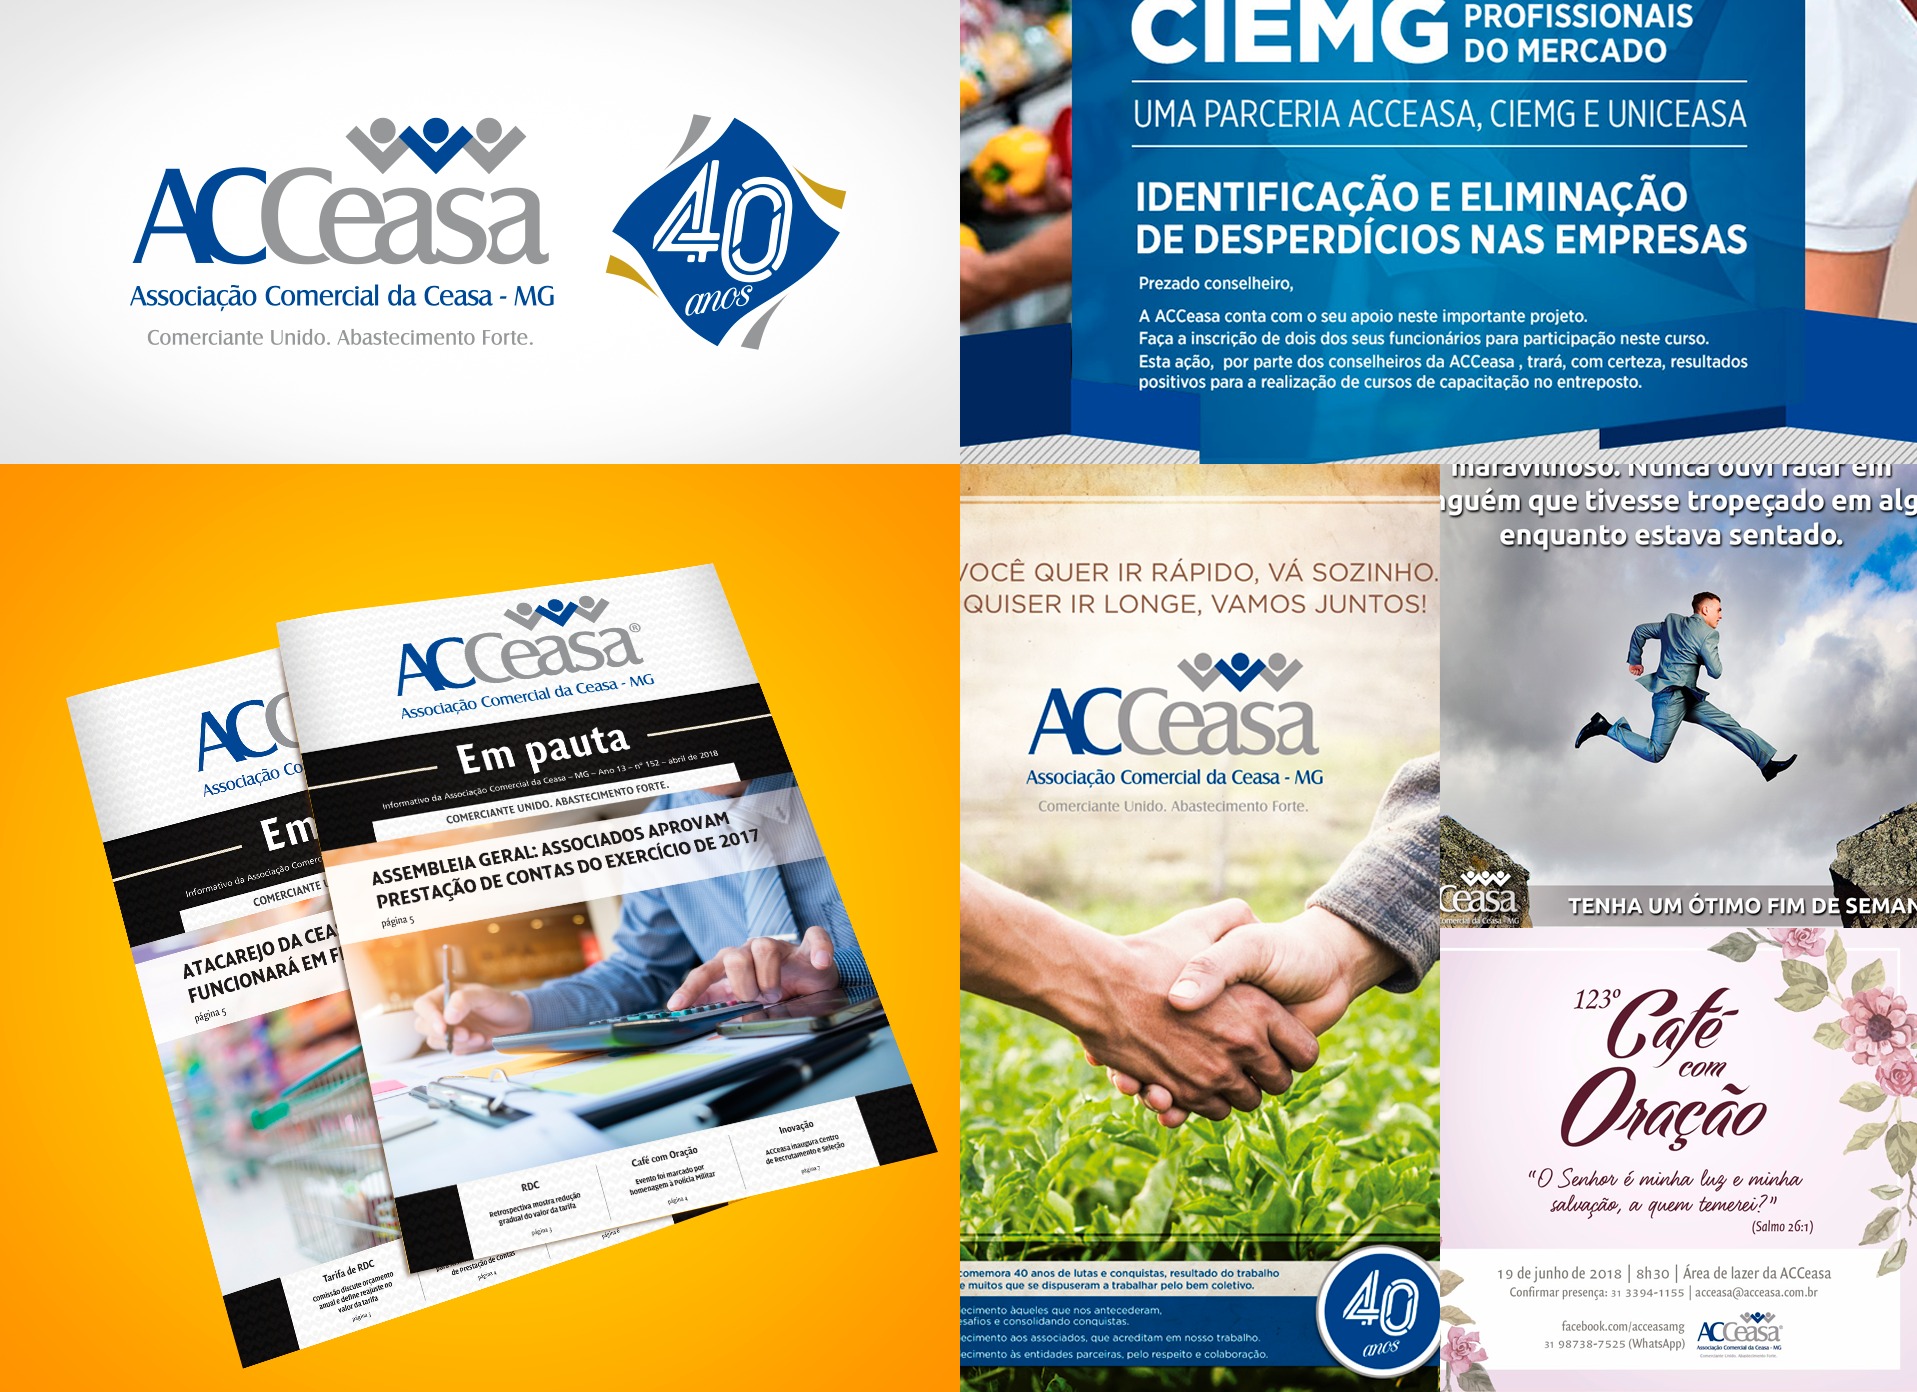 Portfólio ACCeasa - Galpão33: Agência de Publicidade e Comunicação